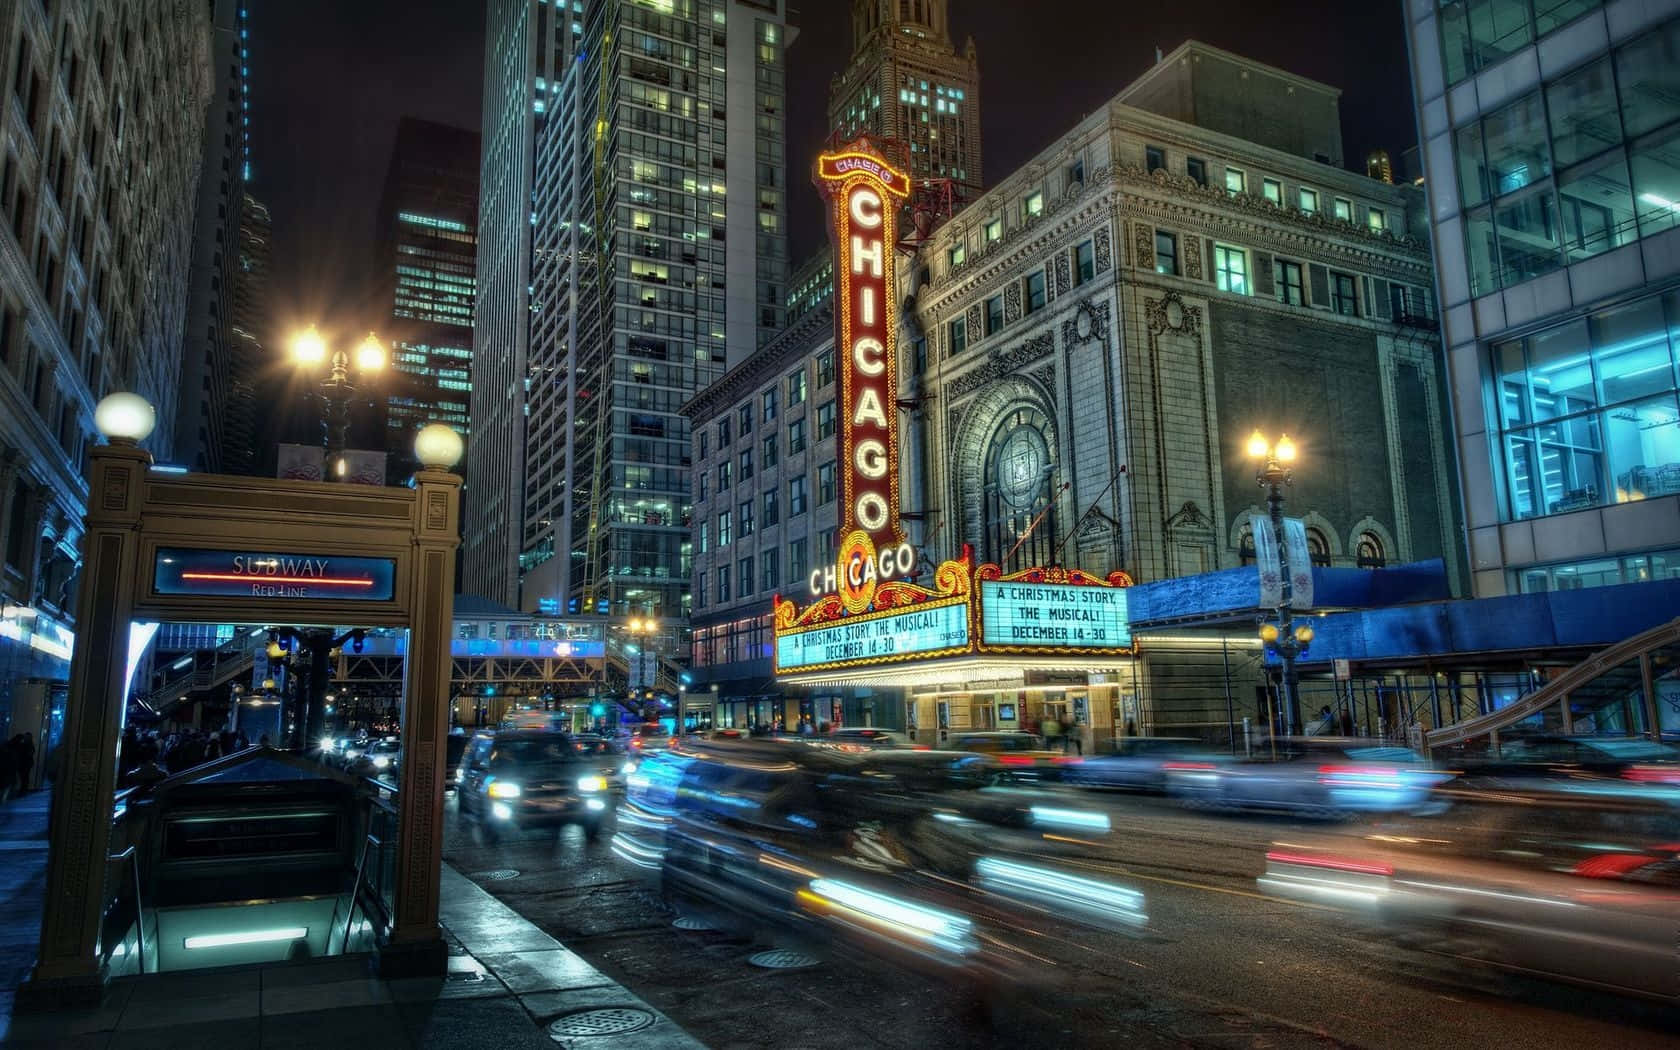 Oplyse nattens himmel, byen Chicago i al sin pragt. Wallpaper